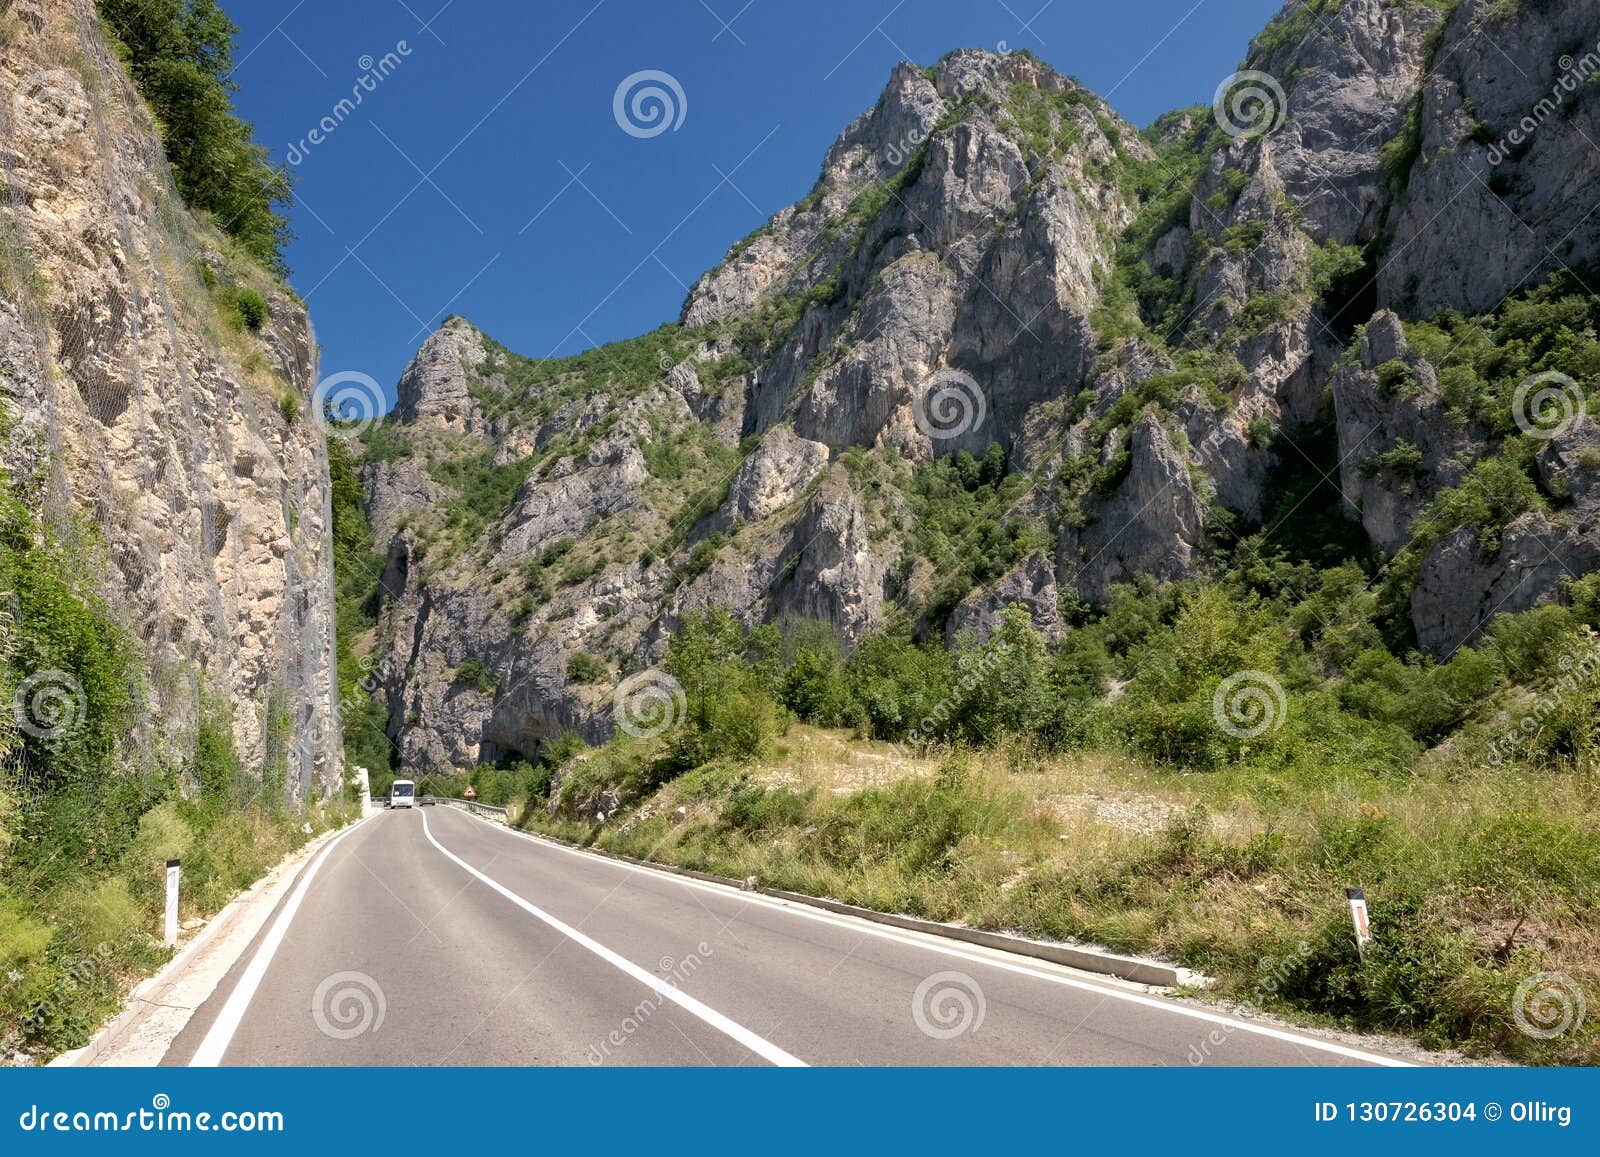 mountain road, serbia